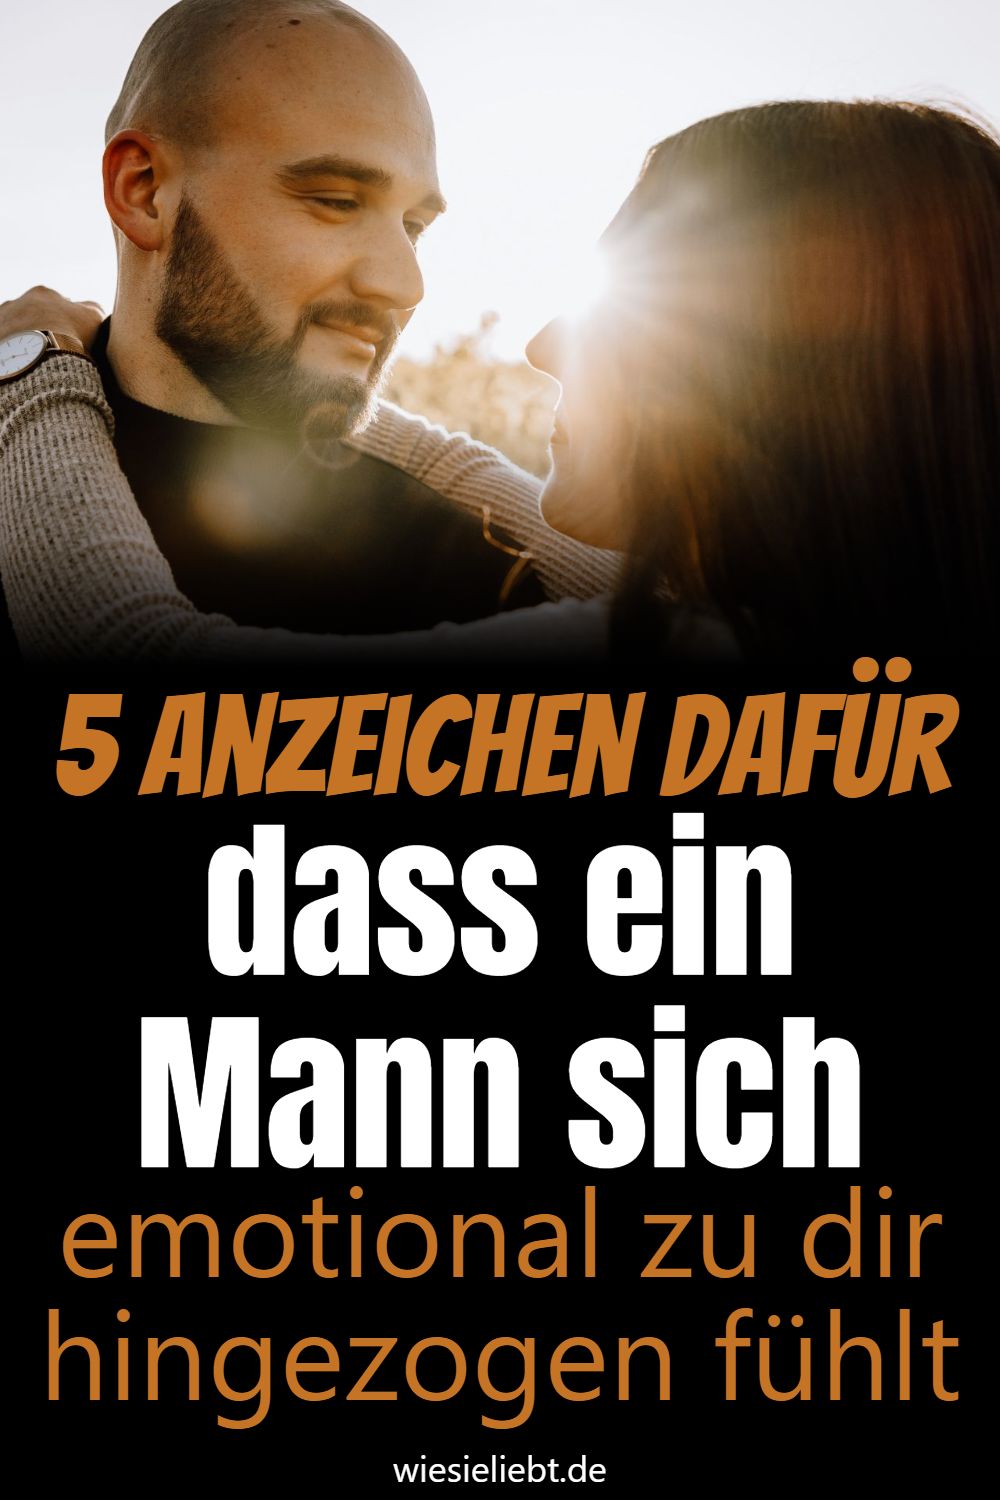 5 Anzeichen dafür dass ein Mann sich emotional zu dir hingezogen fühlt